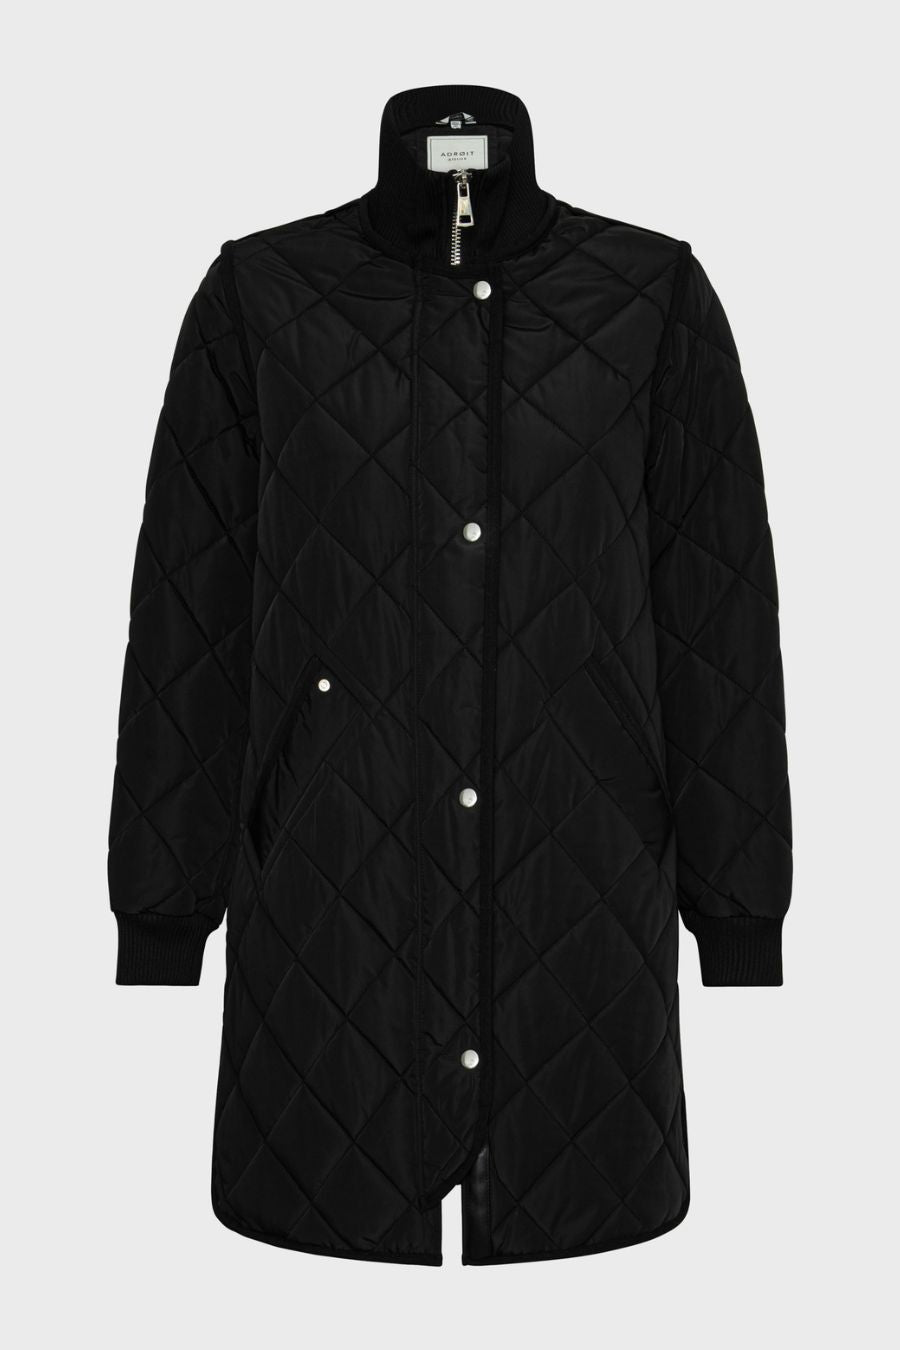 Libby Coat in Black